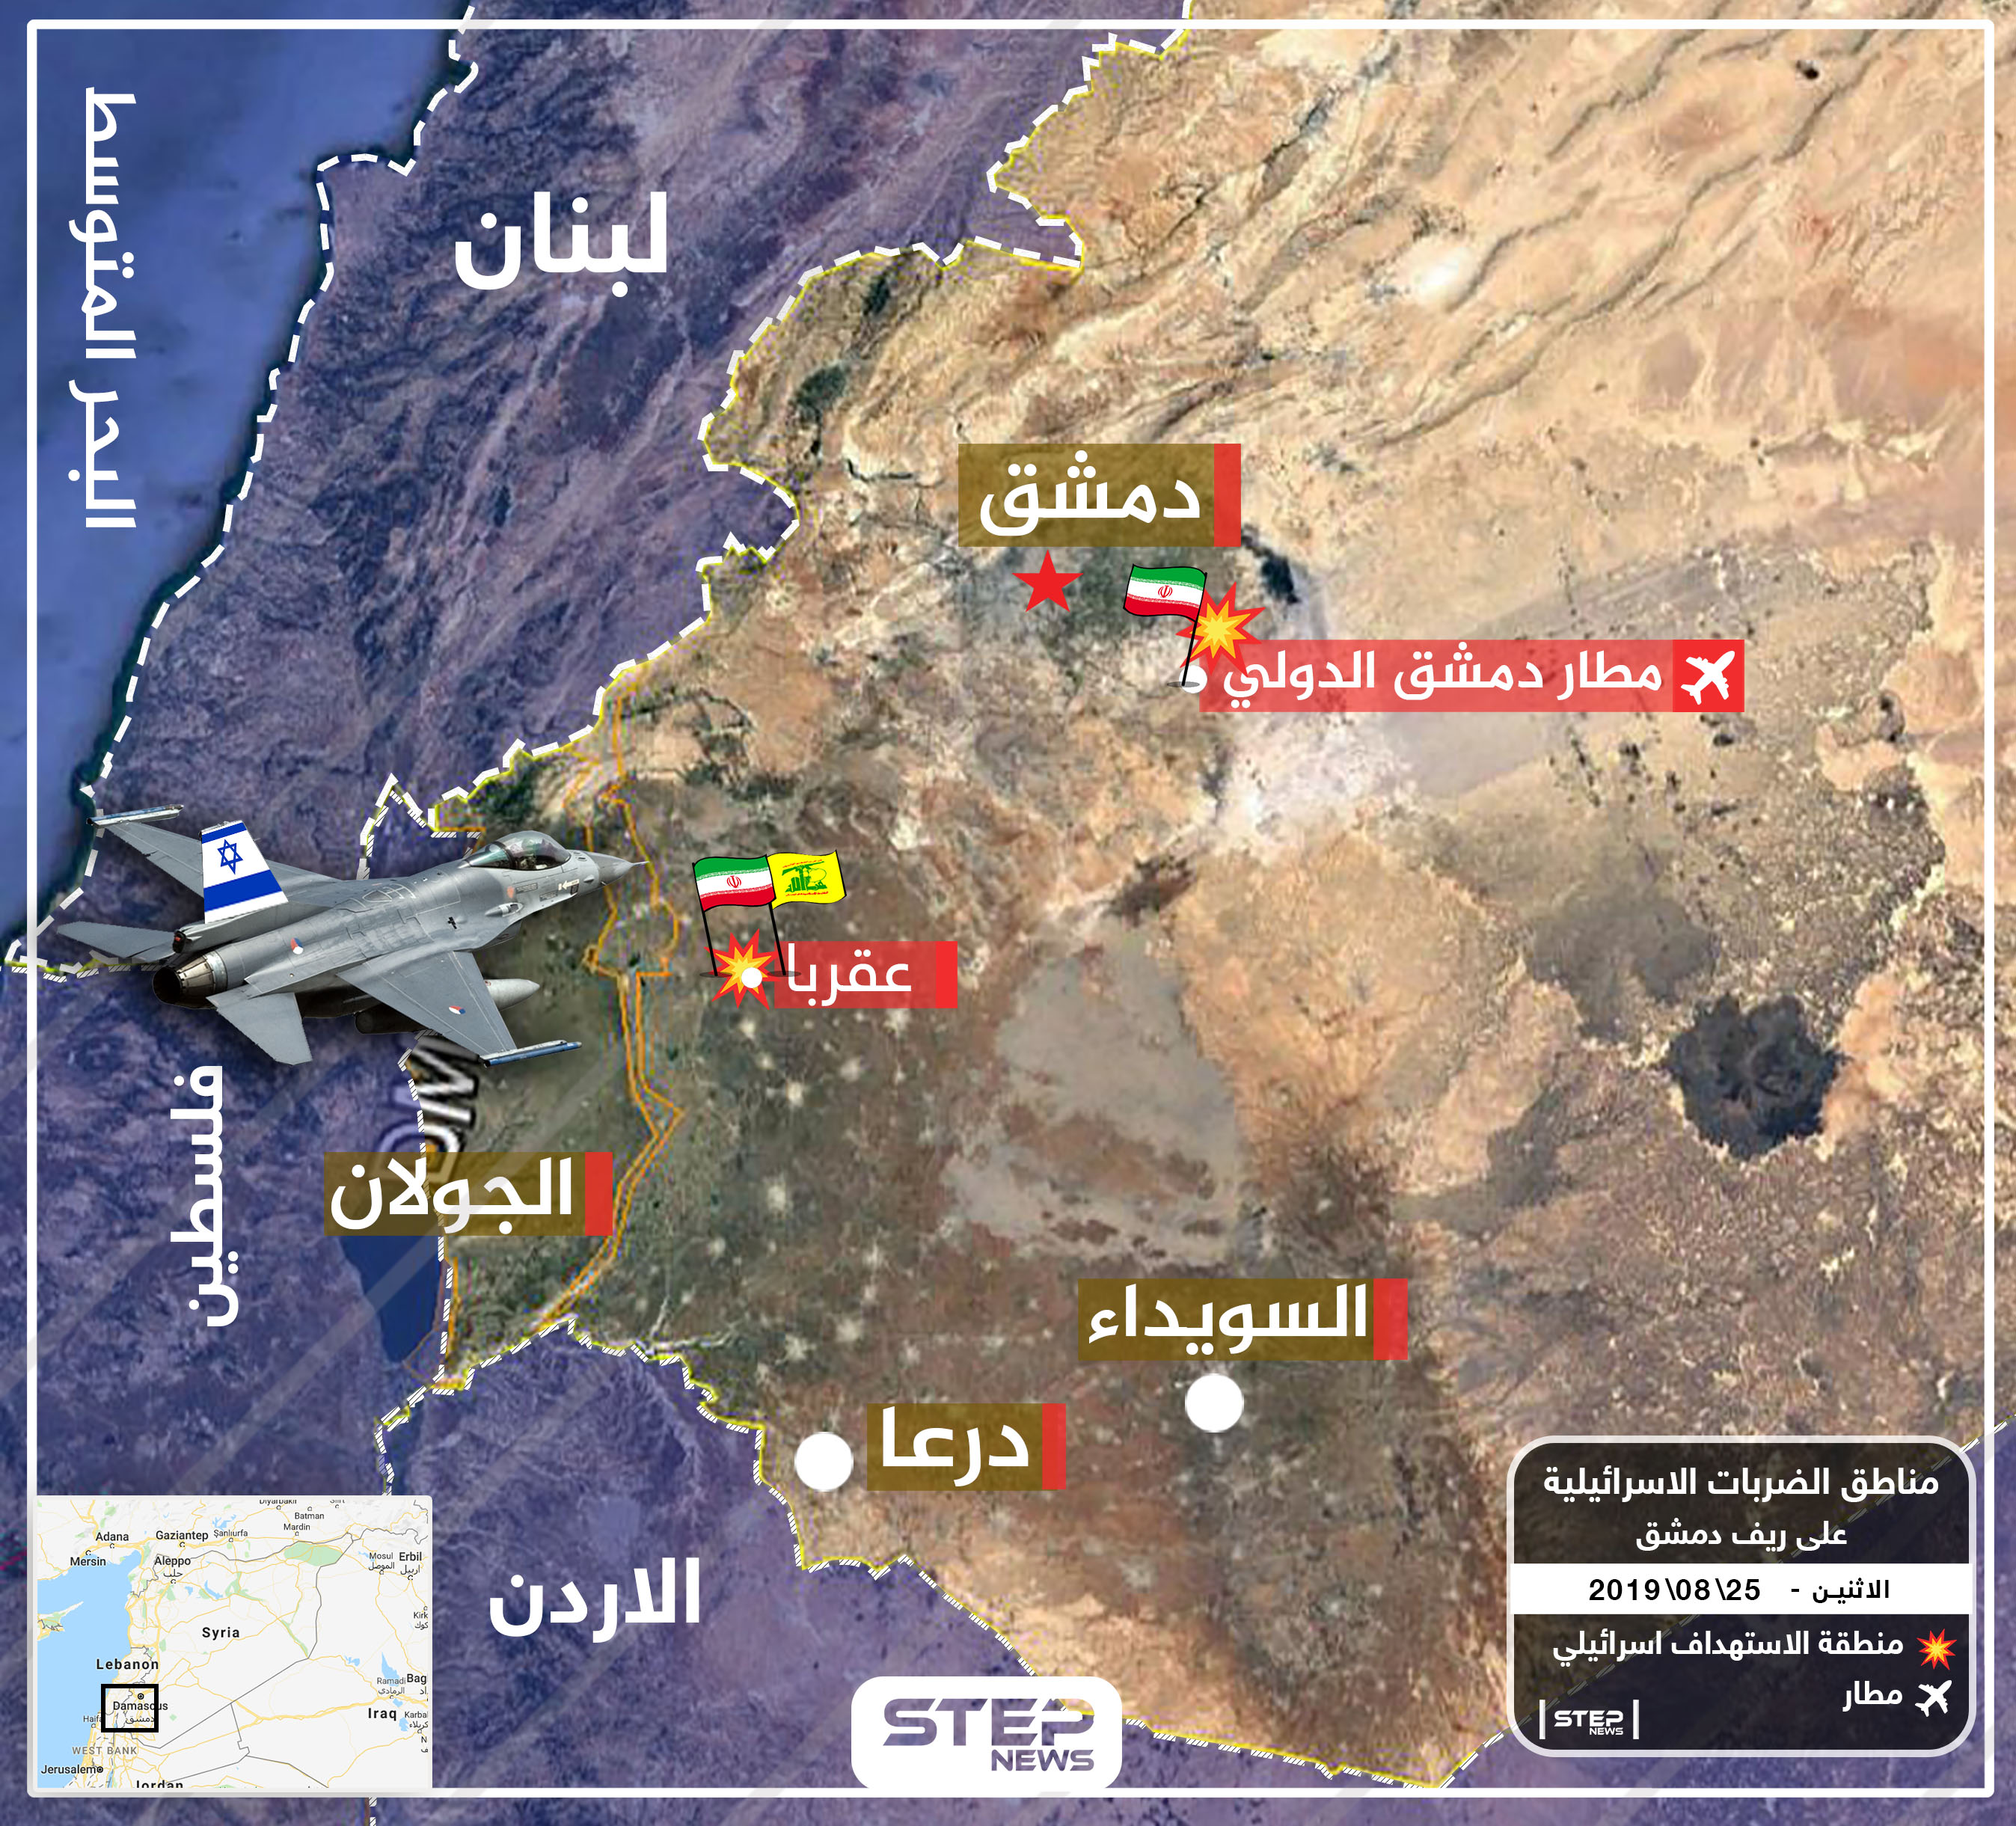 شاهد بالخريطة المواقع الإيرانية المستهدفة بالقصف الإسرائيلي، ومسؤول إيراني ينفي